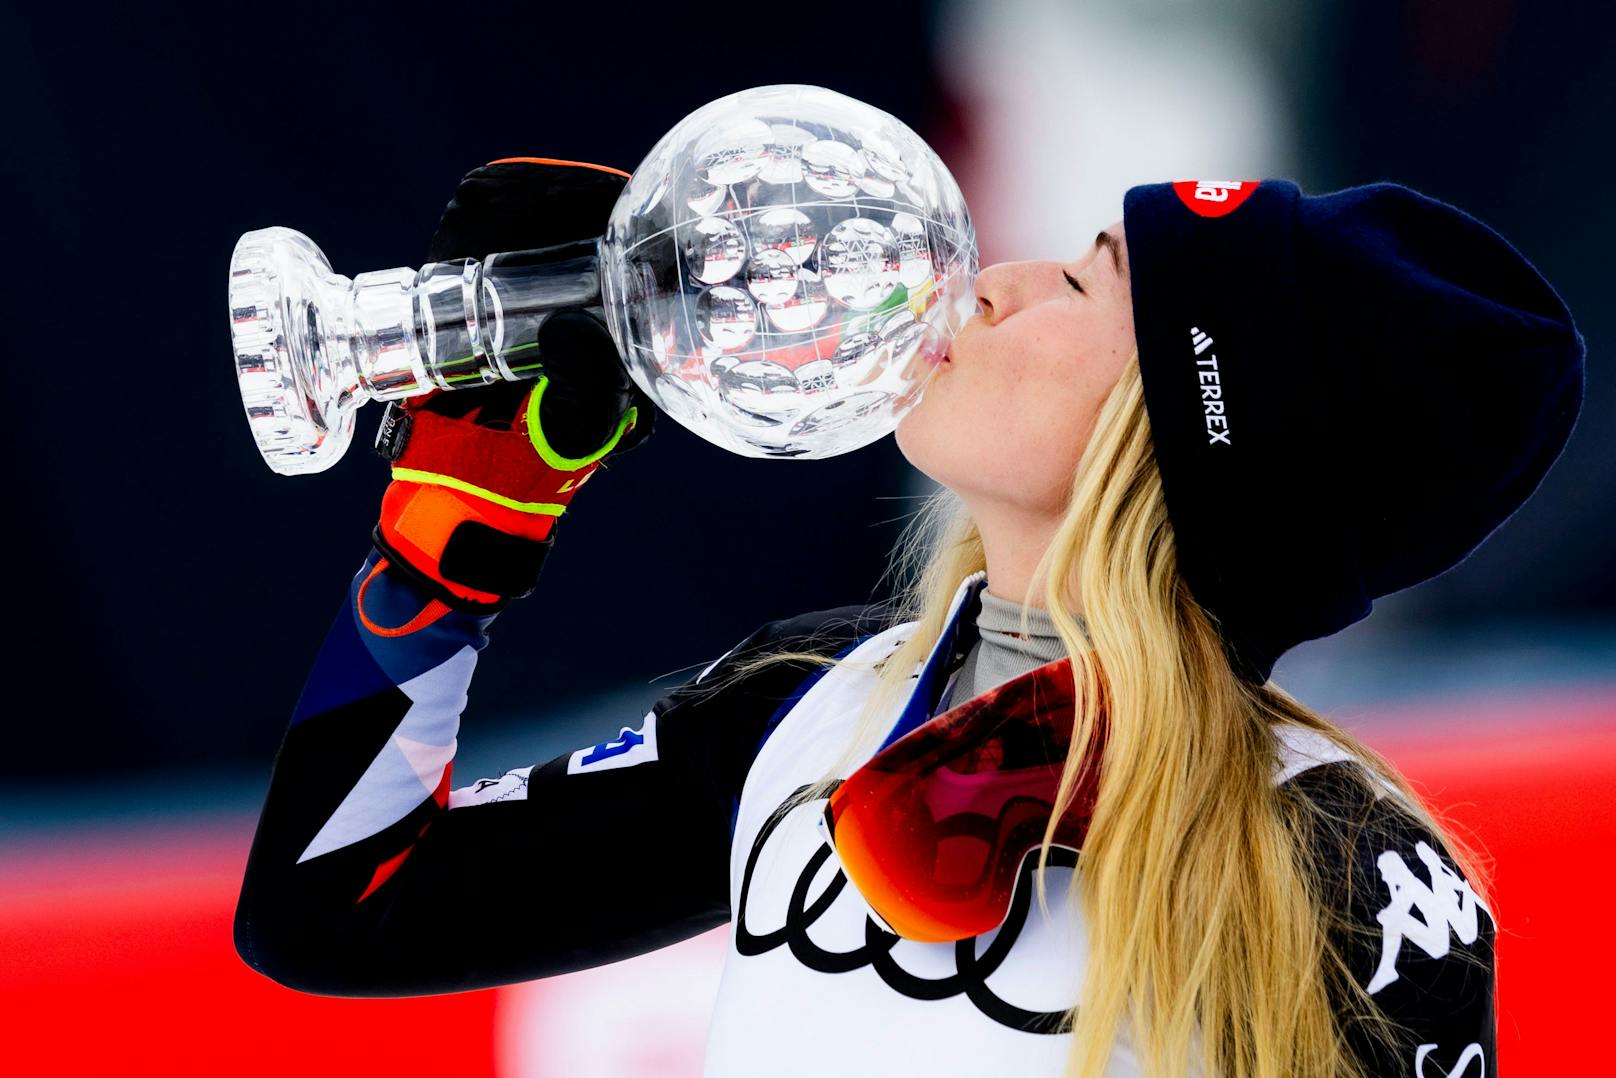 Im letzten Slalom der Saison in Saalbach krönte sich Mikaela Shiffrin mit ihrem 97. Weltcupsieg zur Siegerin in der Slalom-Wertung. Es ist die achte Kristallkugel in ihrer Paradedisziplin in ihrer Karriere. Mit Katharina Huber auf Platz fünf und Katharina Liensberger als Sechste gab es ein versöhnliches Ende der Saison.